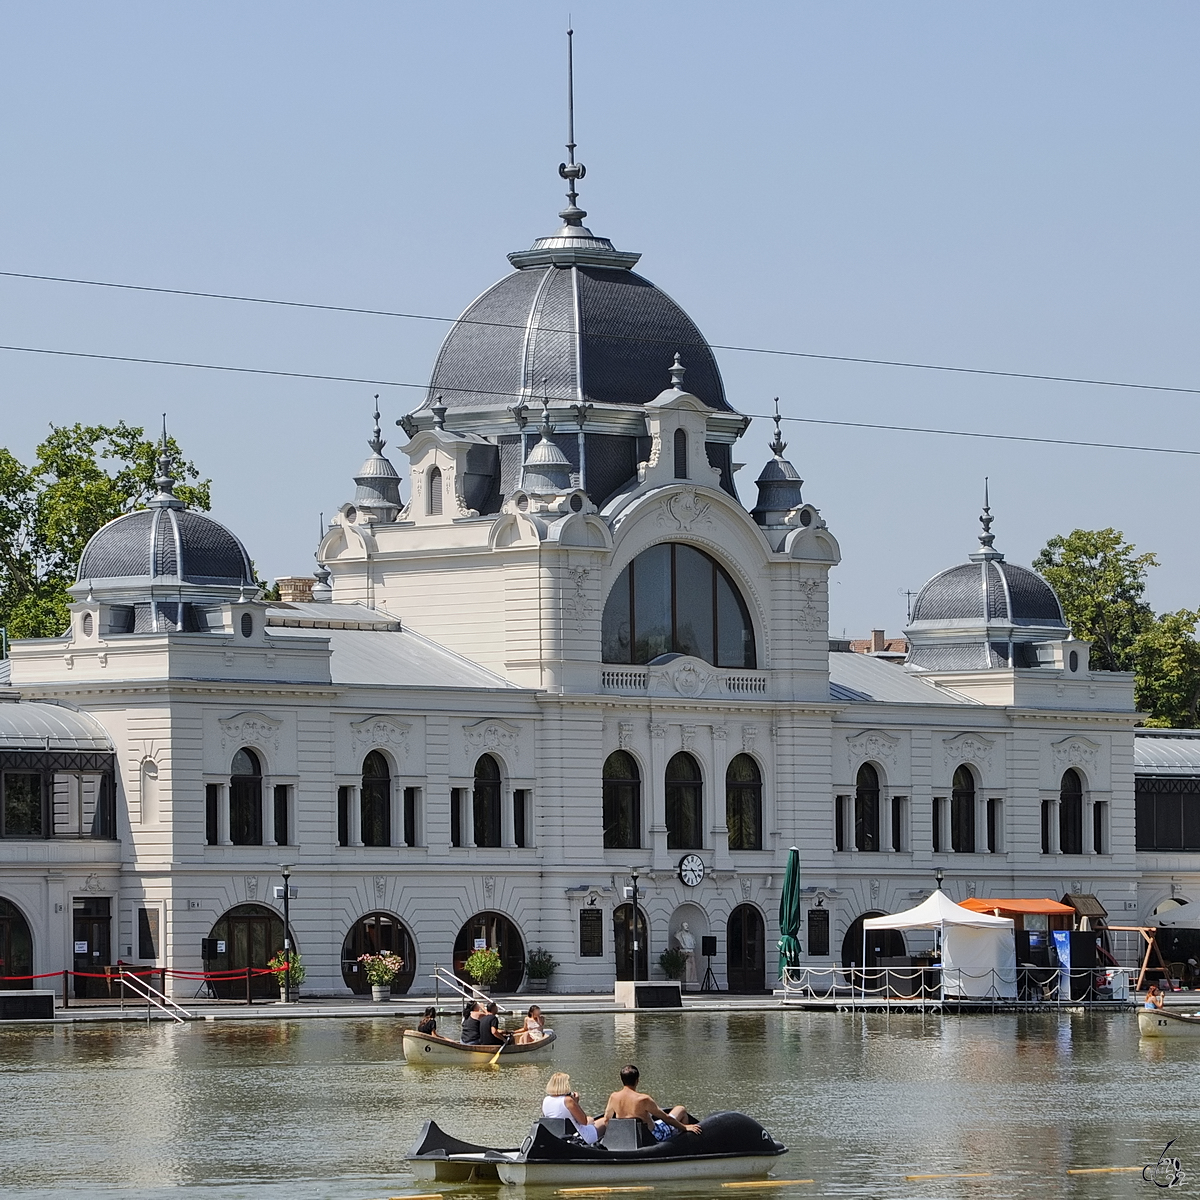 Erholung auf dem Wasser bei ca. 40 Auentemperatur vor dem 1895 erbauten Sportpavillon. (Budapest, August 2013)